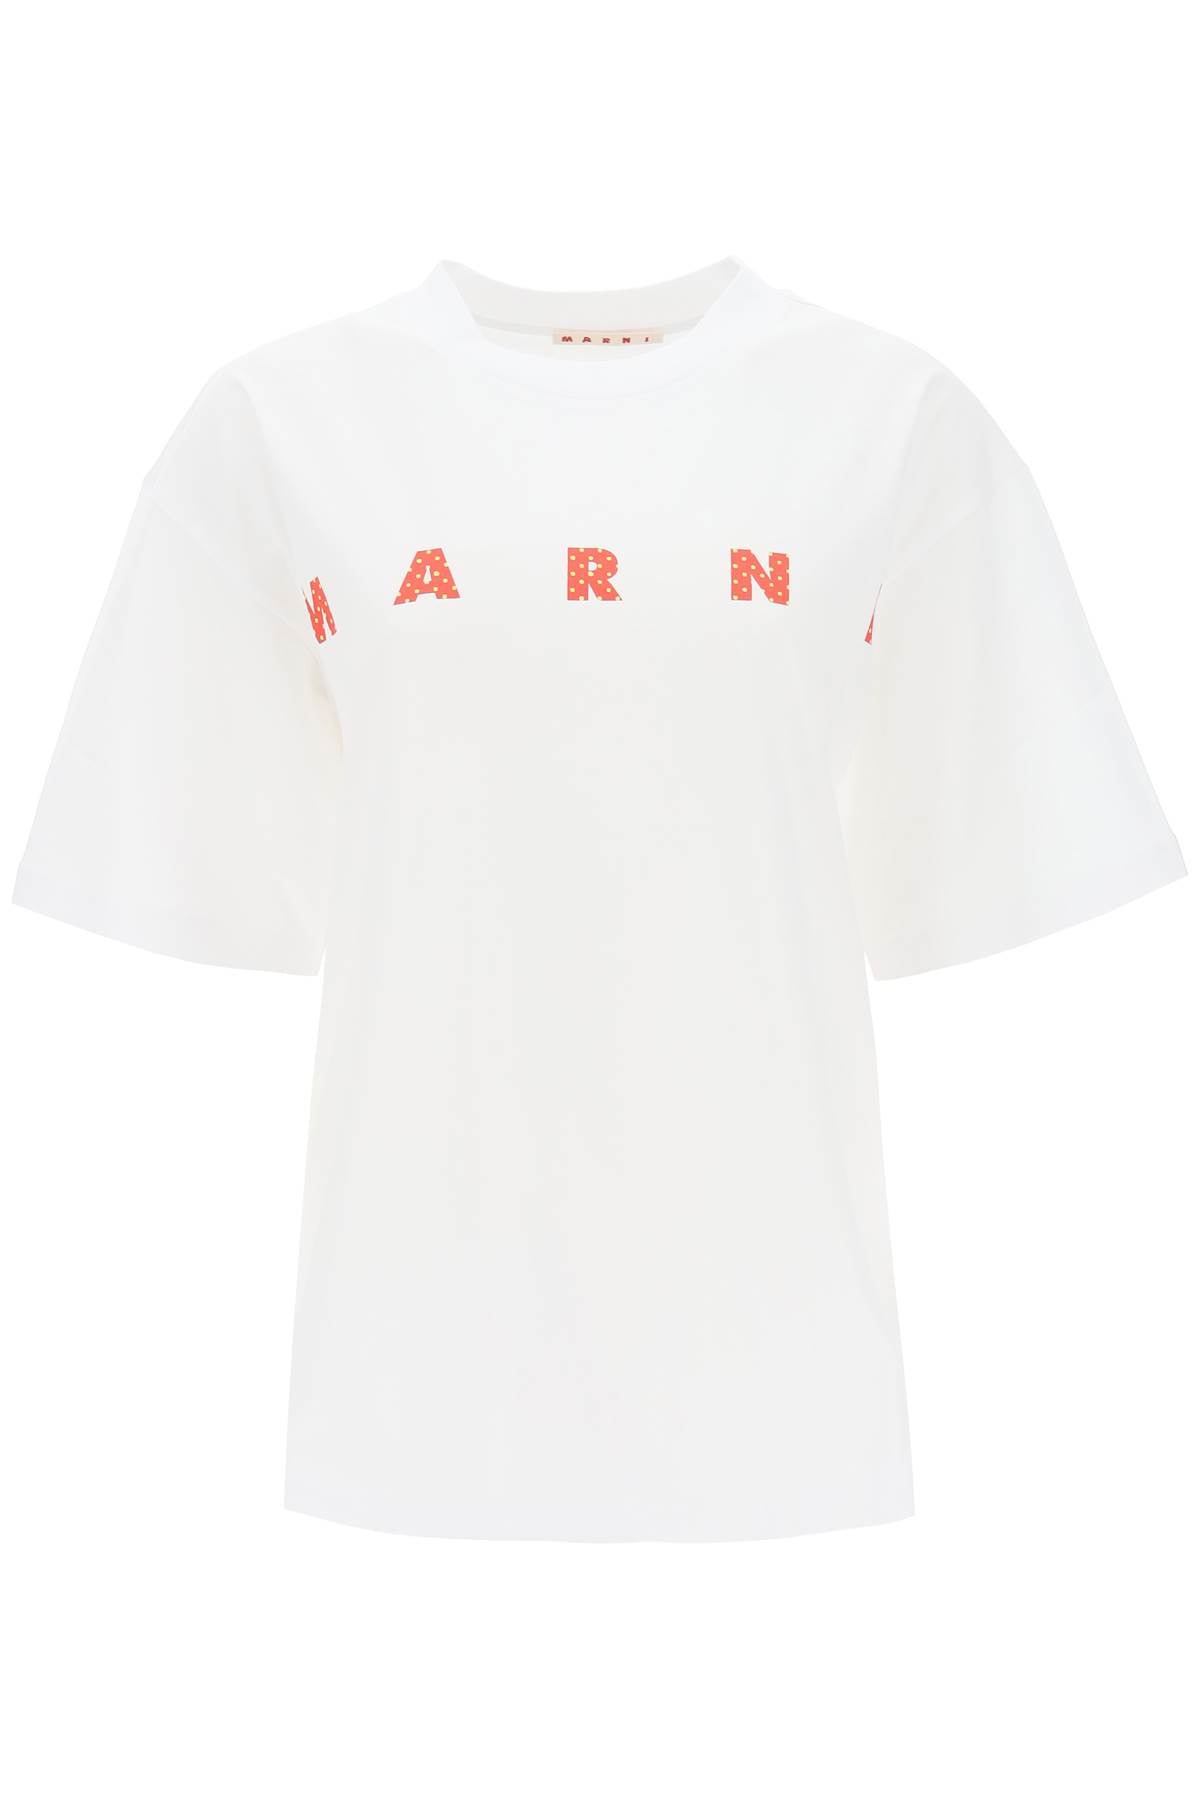 Marni-T Shirt Stampa Logo-Donna